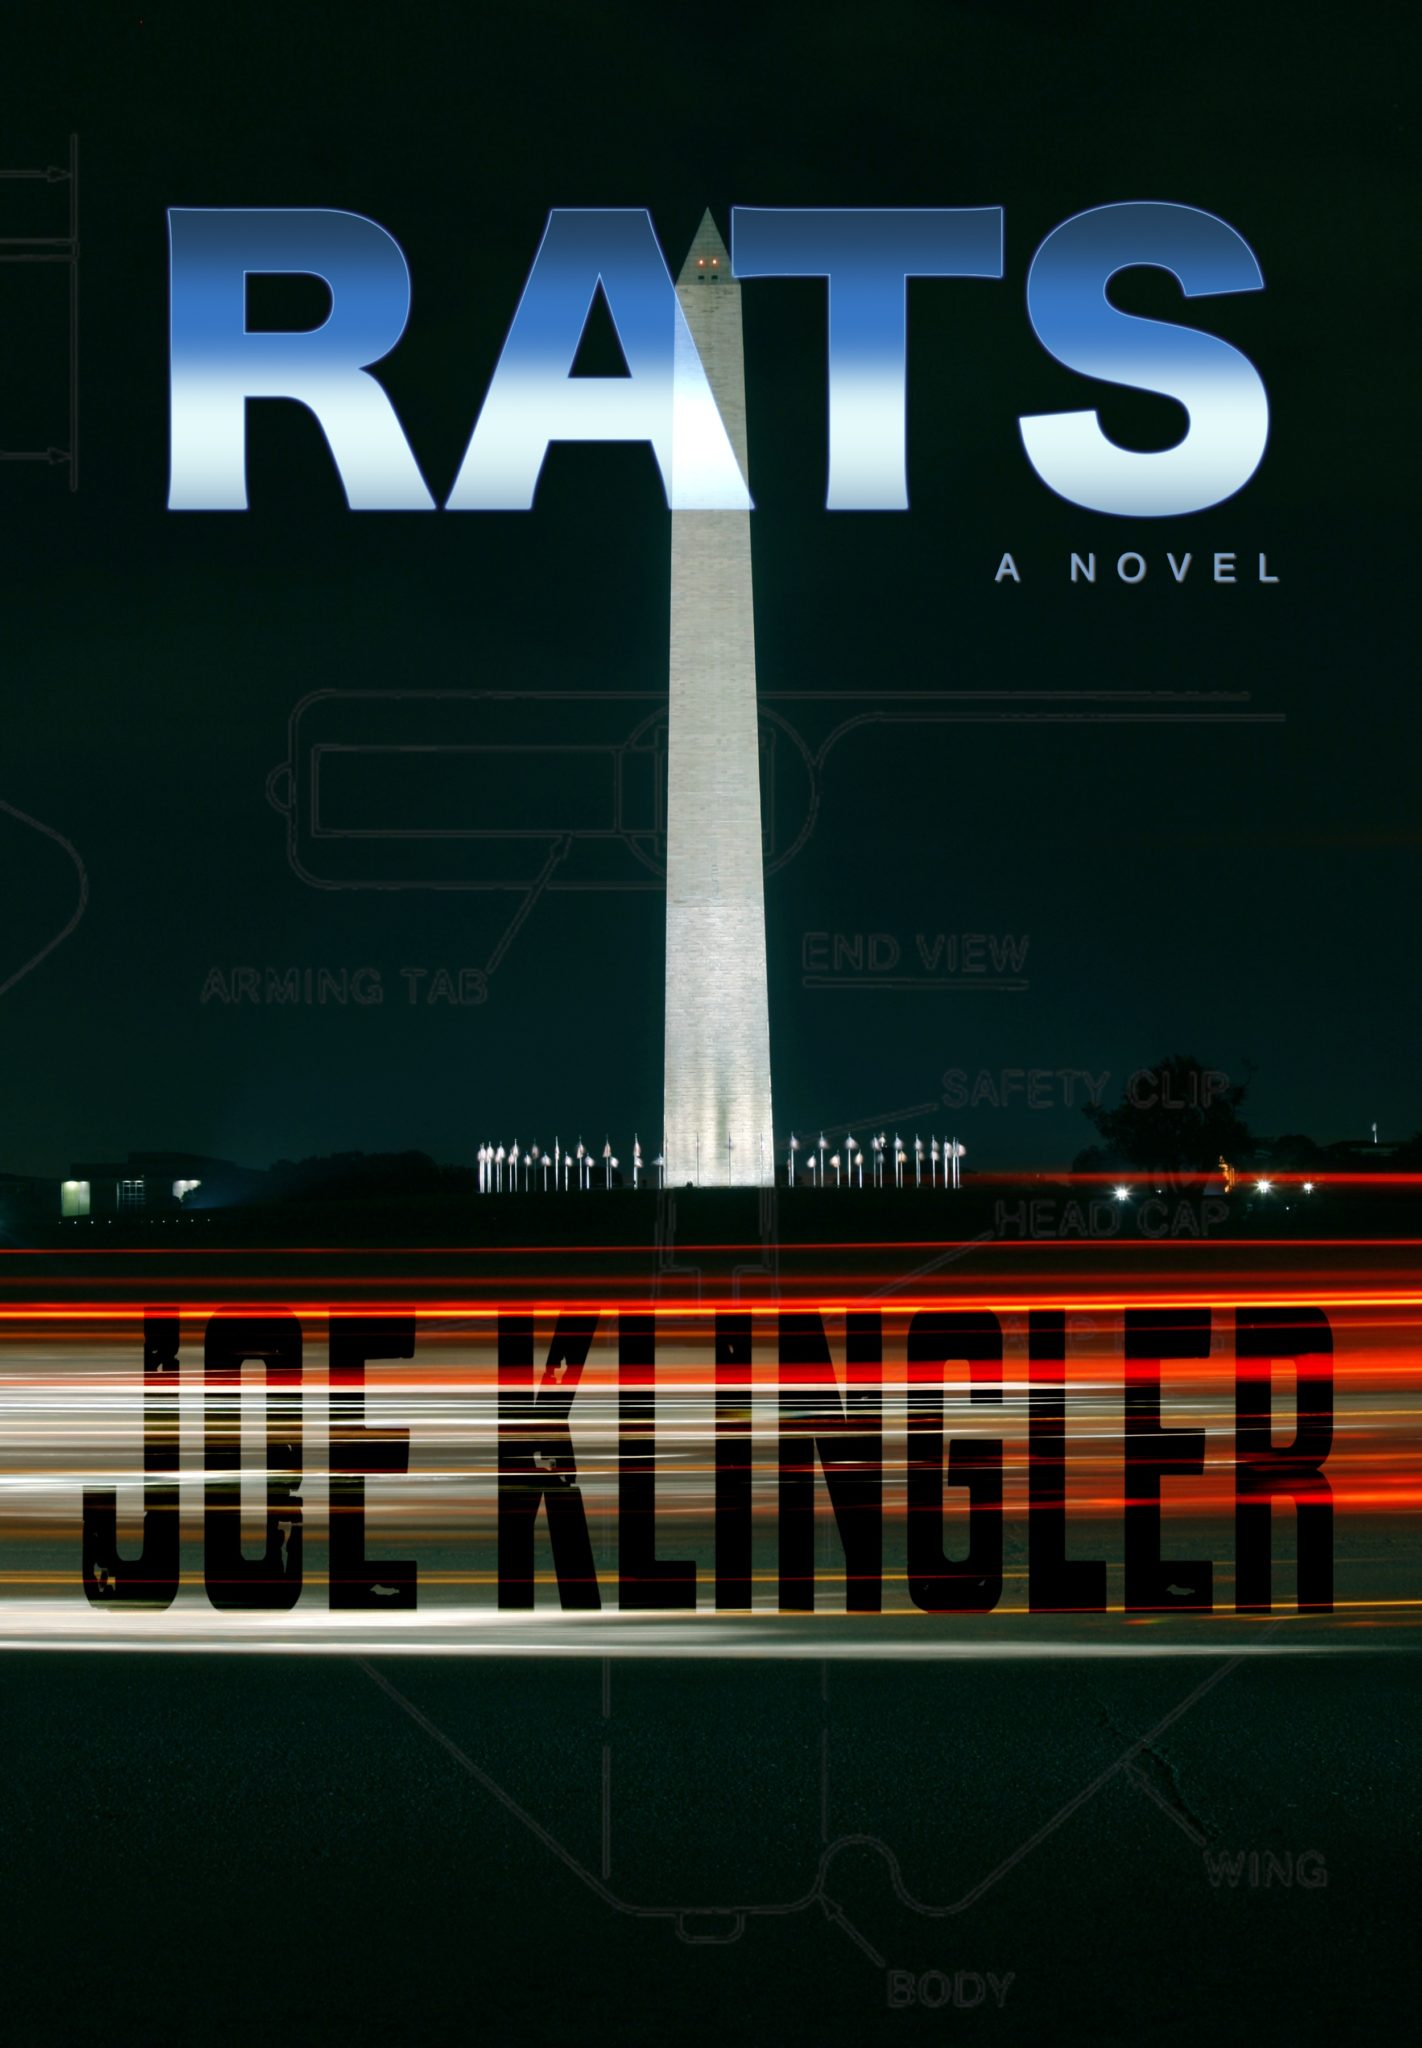 RATS by Joe Klingler